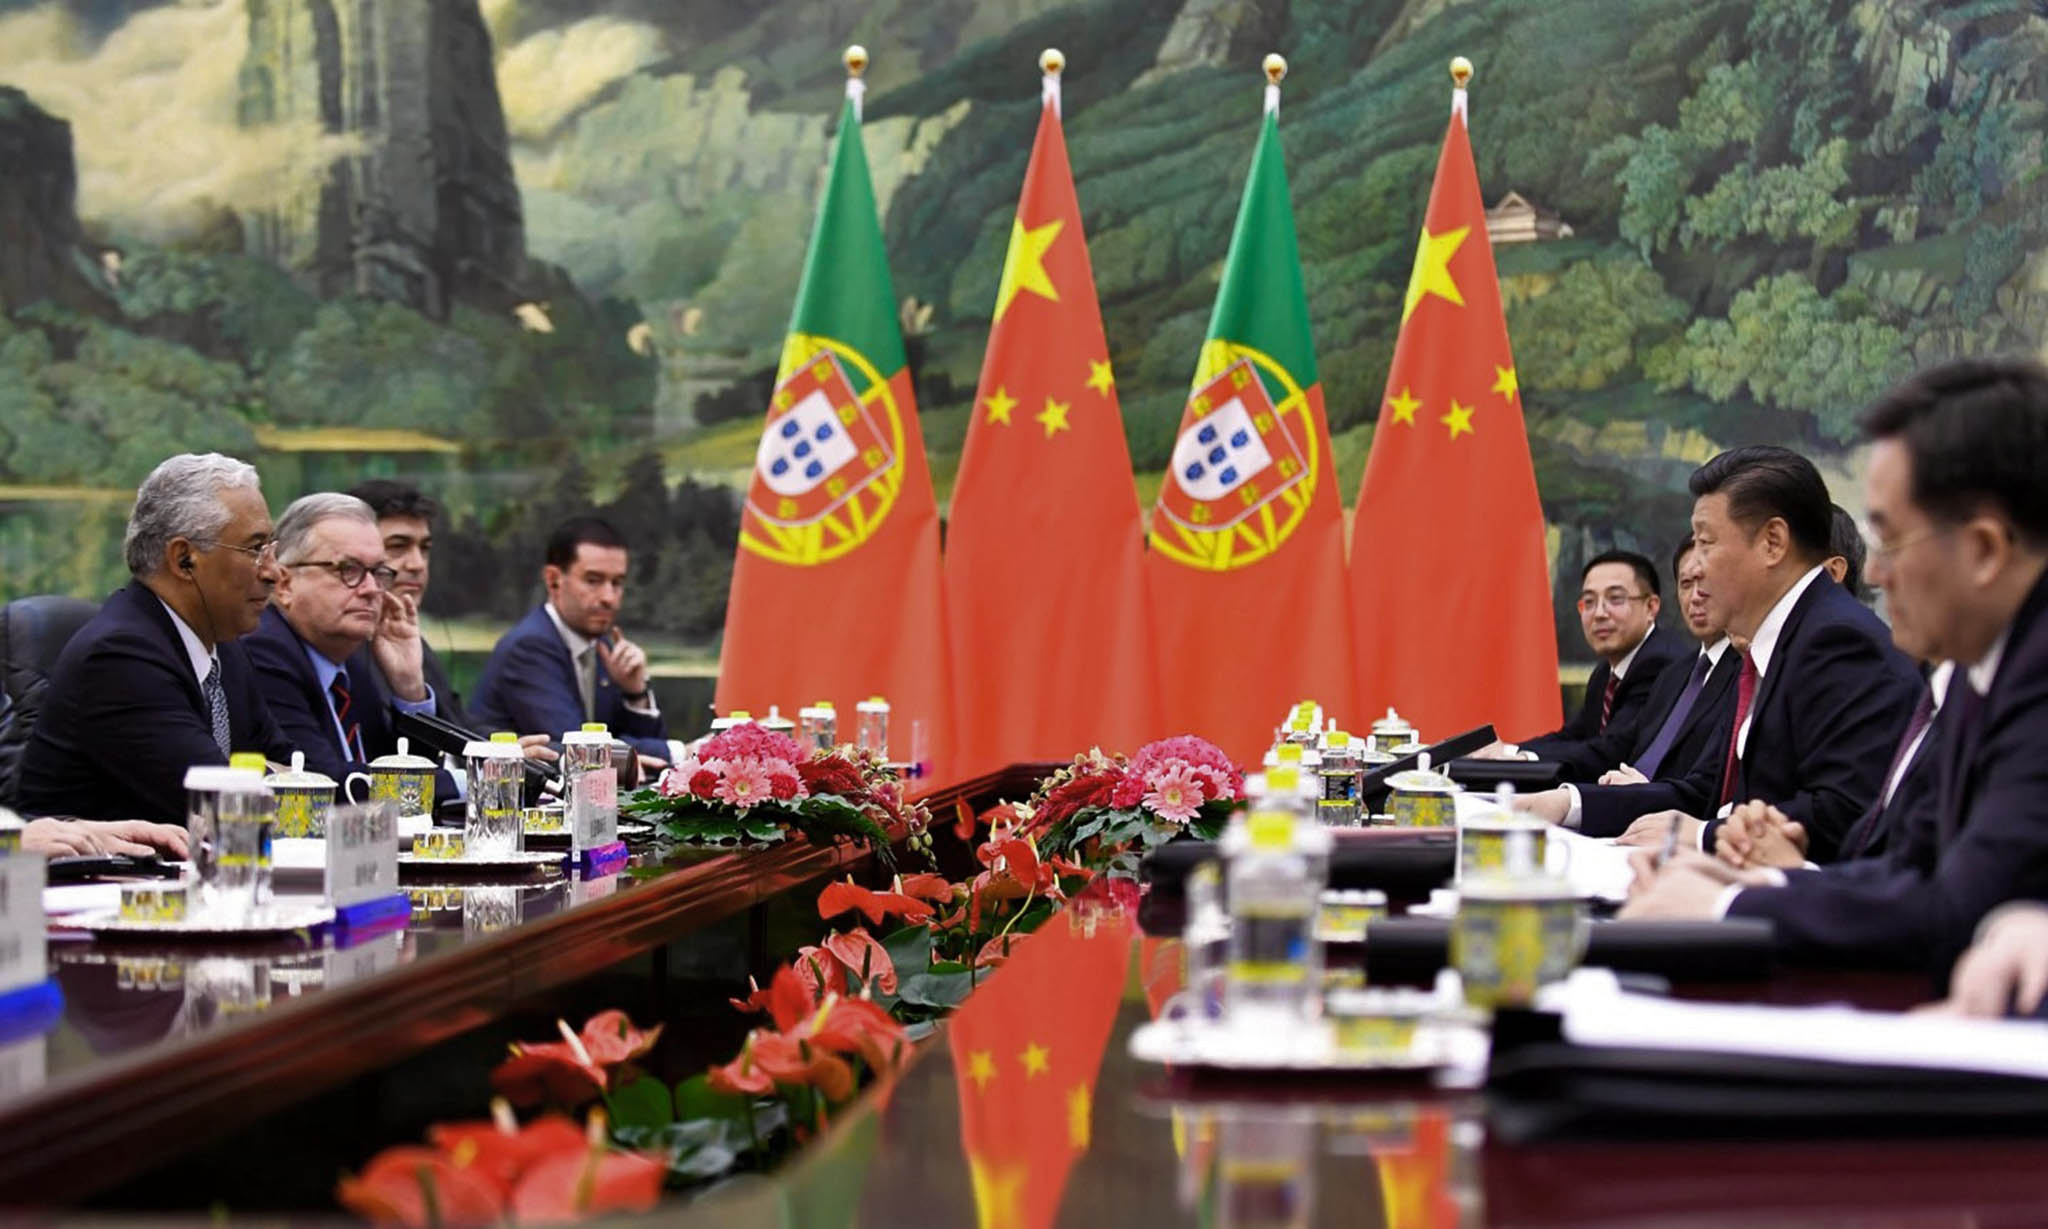 Nova associação pretende promover “compreensão e amizade” entre Portugal e China